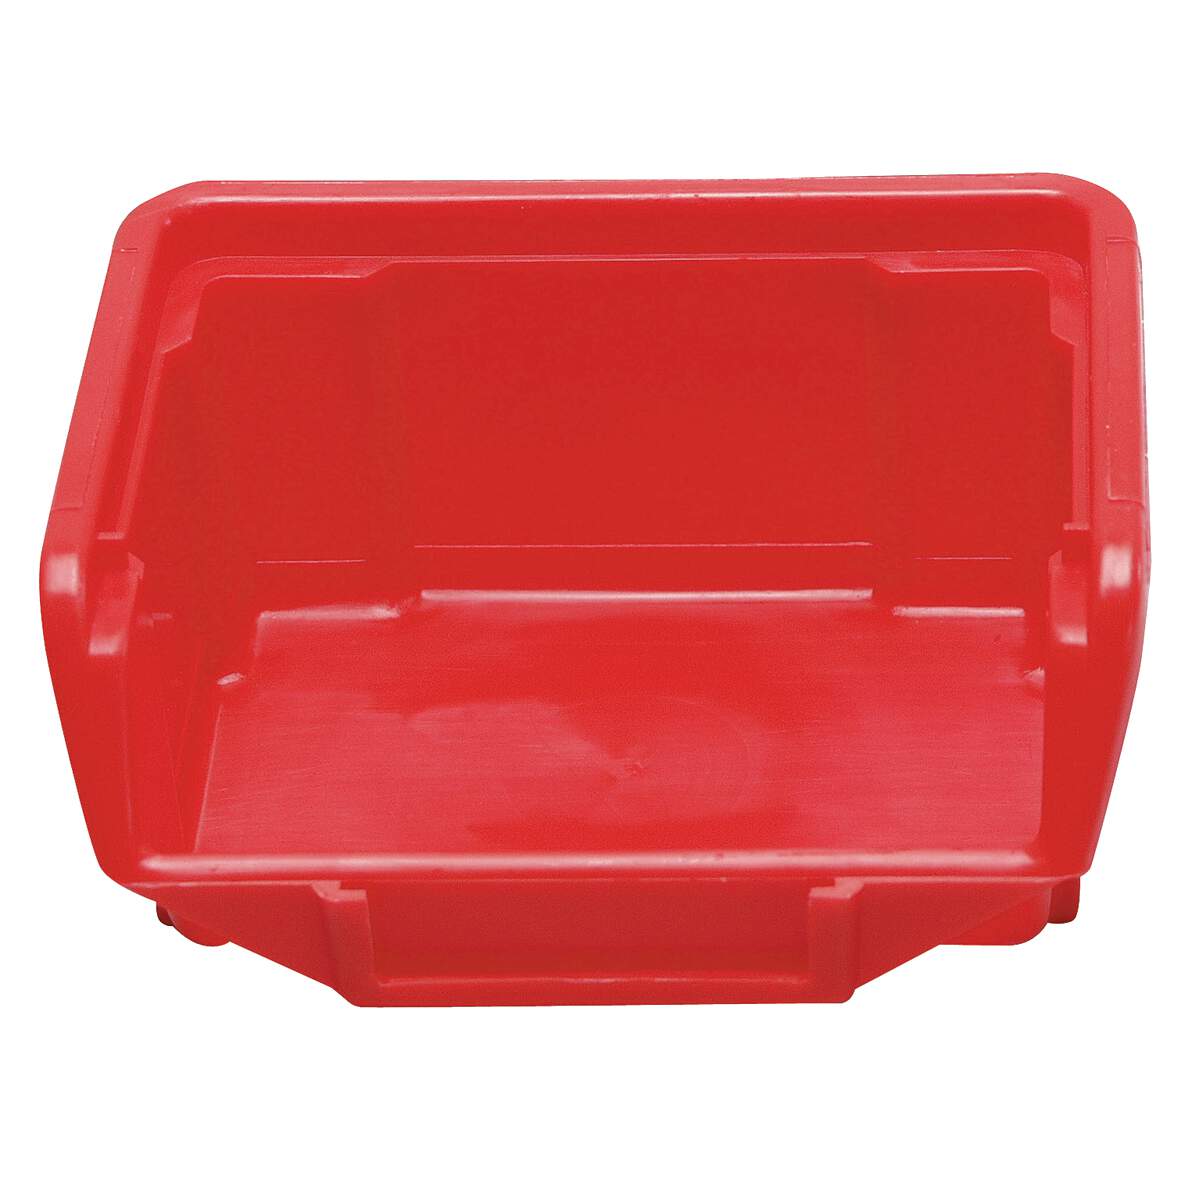 1032521 - Stapelbox rot Größe 3